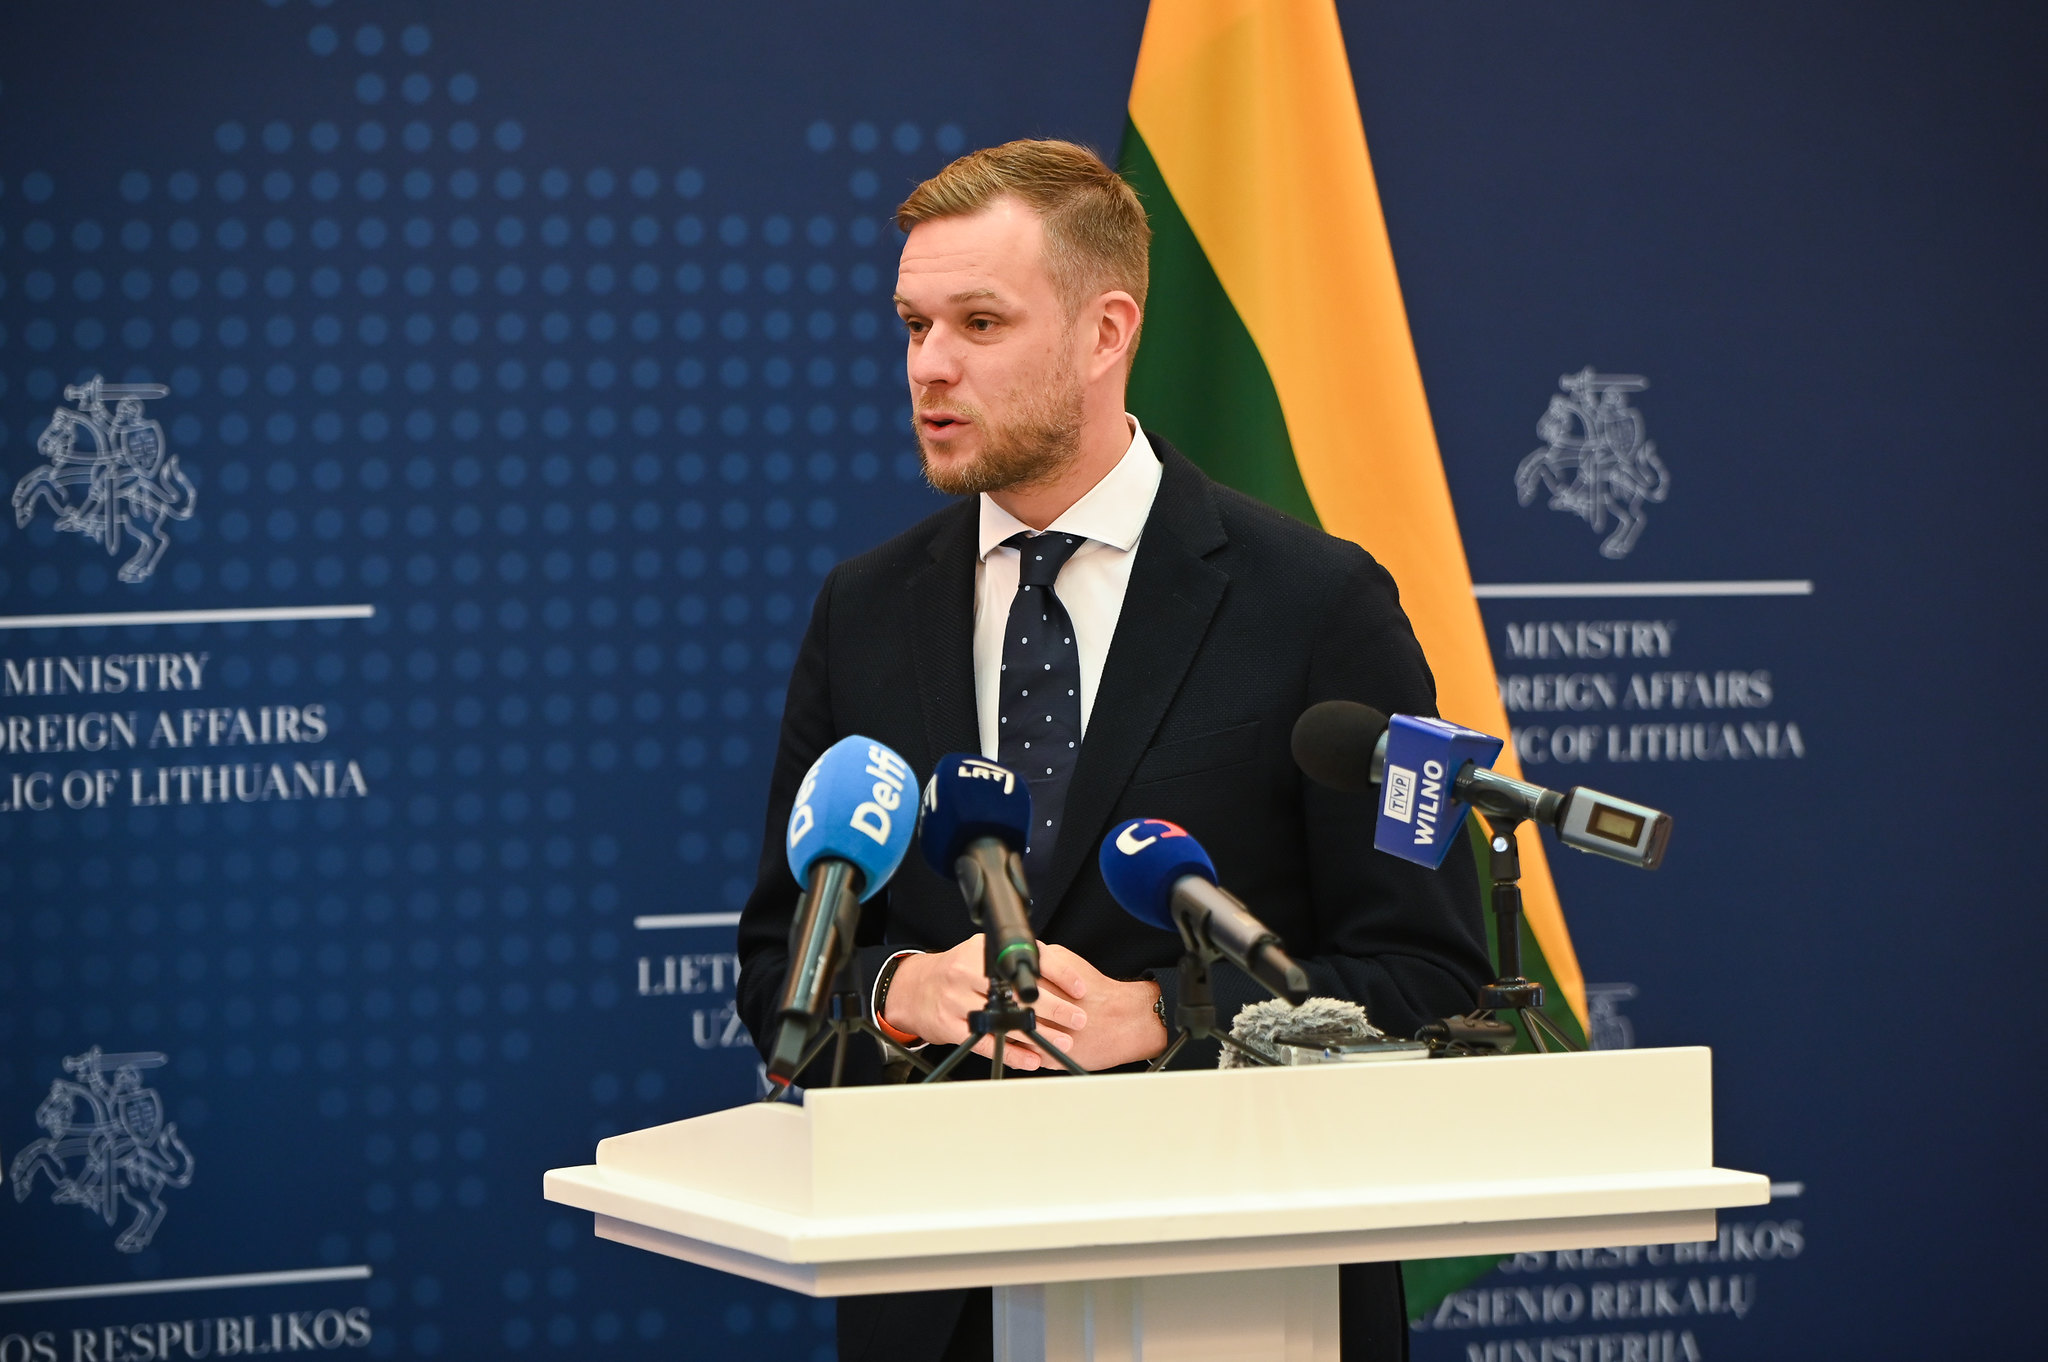 Liettuan ulkoministeri Gabrielius Landsbergis on edistänyt arvopohjaista ulkopolitiikkaa. Kuva: J. Azanovo/Liettuan ulkoministeriö/Flickr